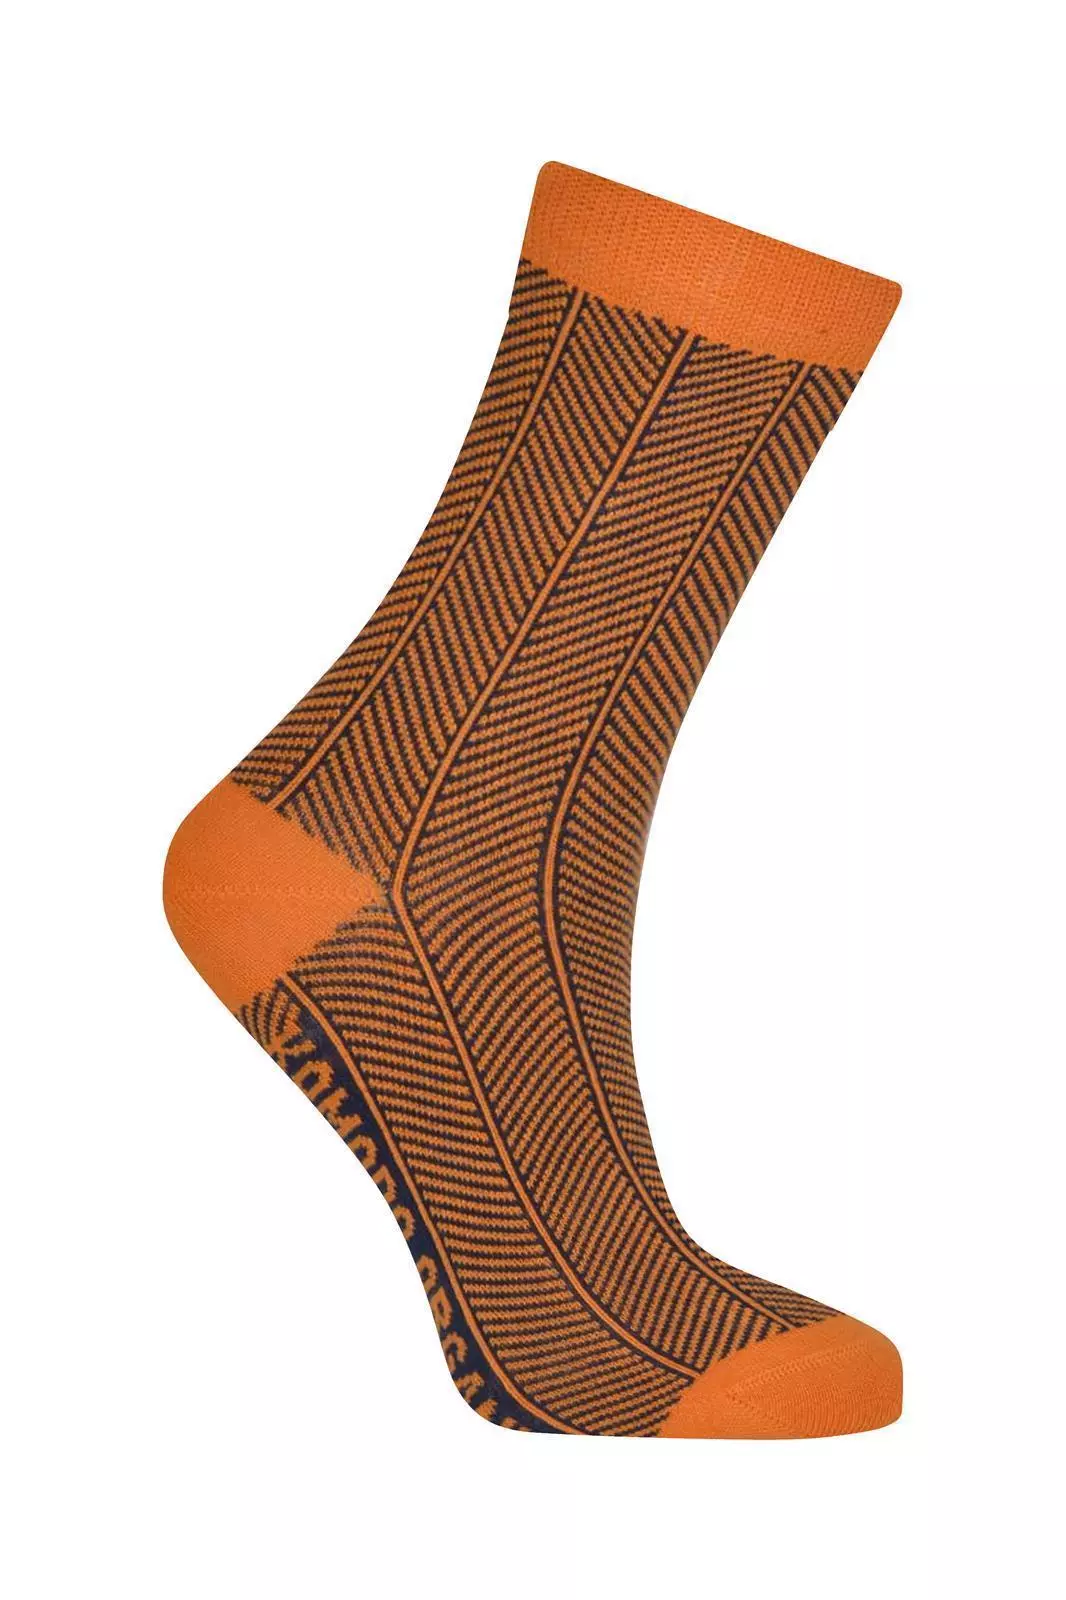 Socken Modell: Herringbone